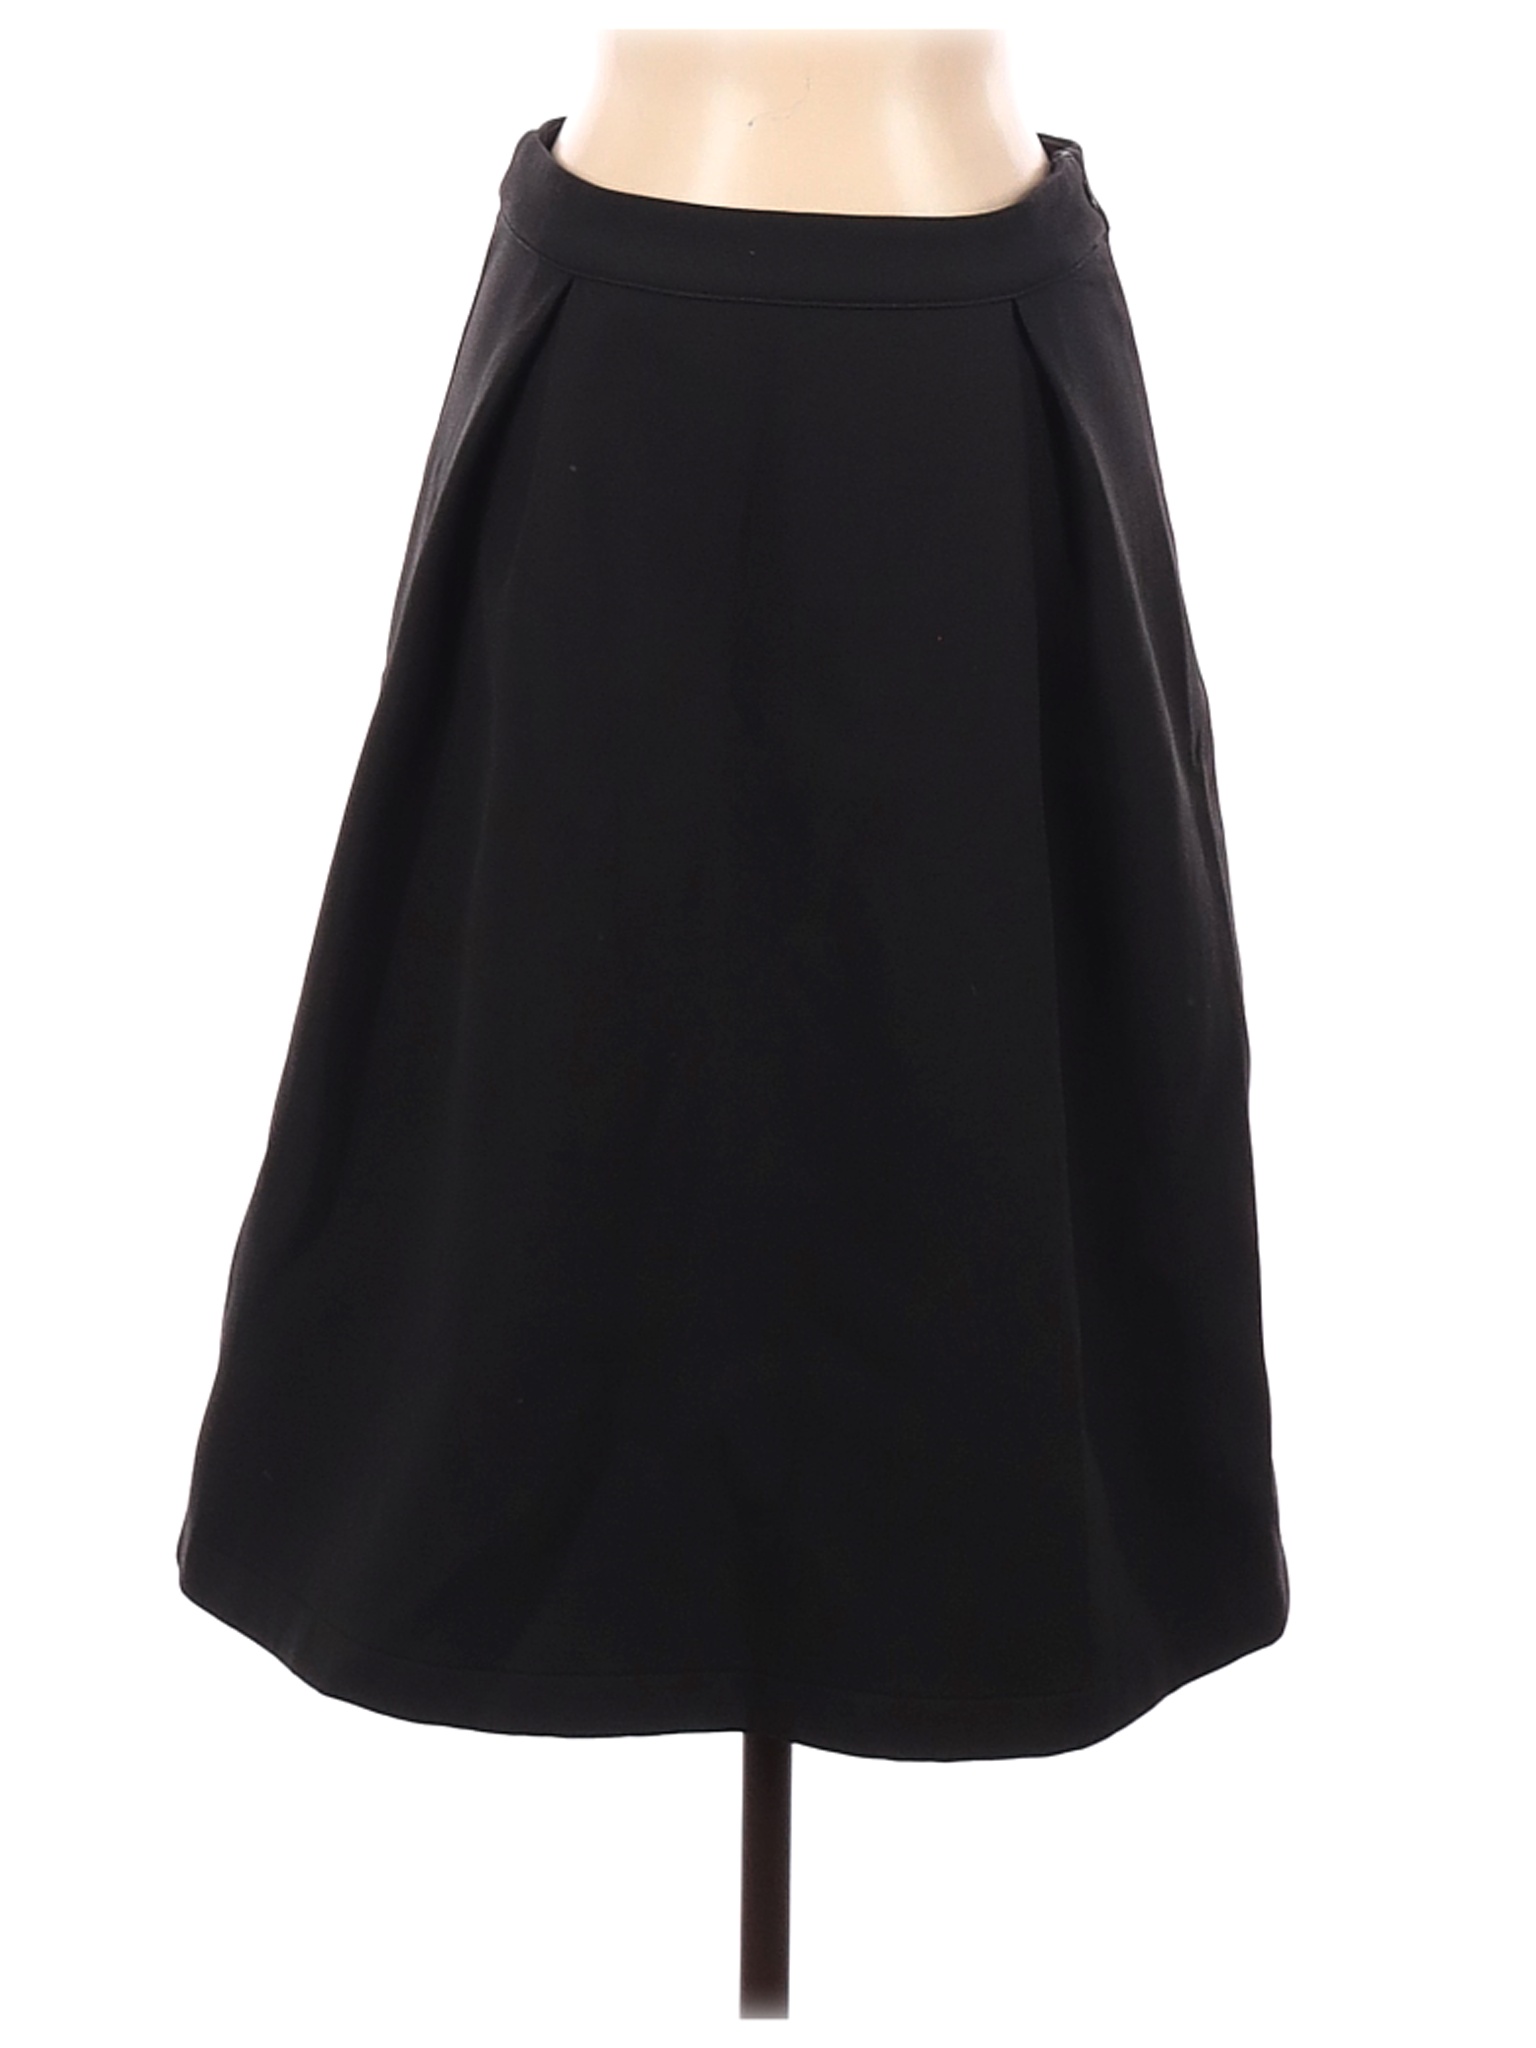 Junee Women Black Casual Skirt S | eBay